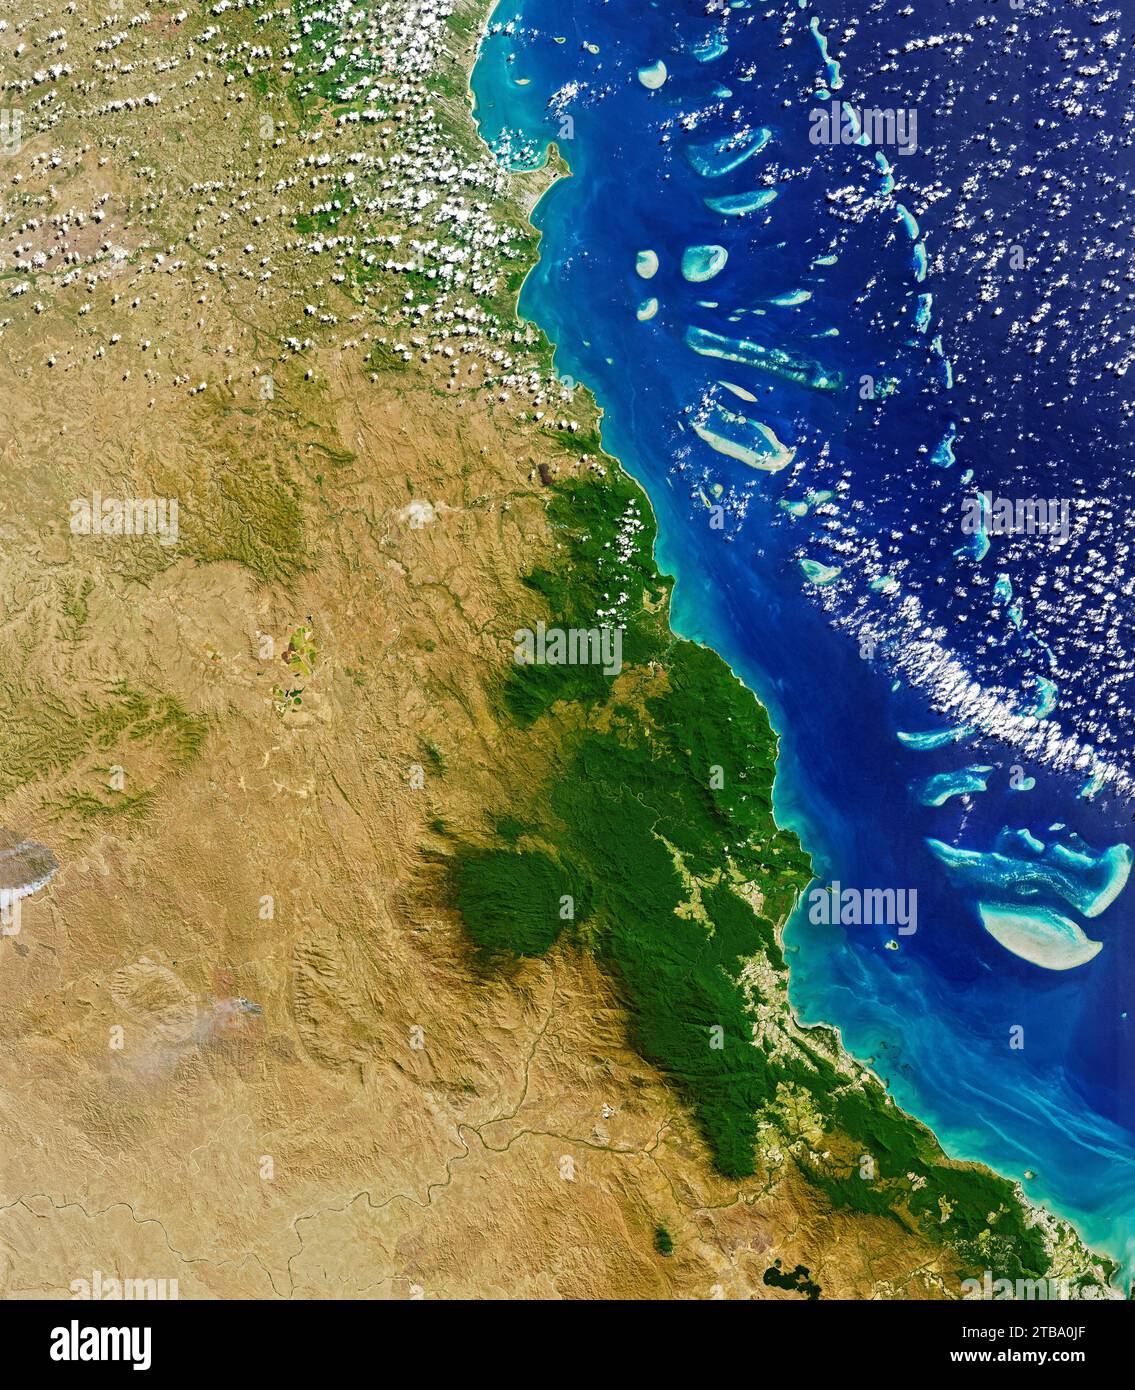 Vista satelital en color natural de la selva tropical de Daintree en el extremo norte de Queensland, Australia. Foto de stock